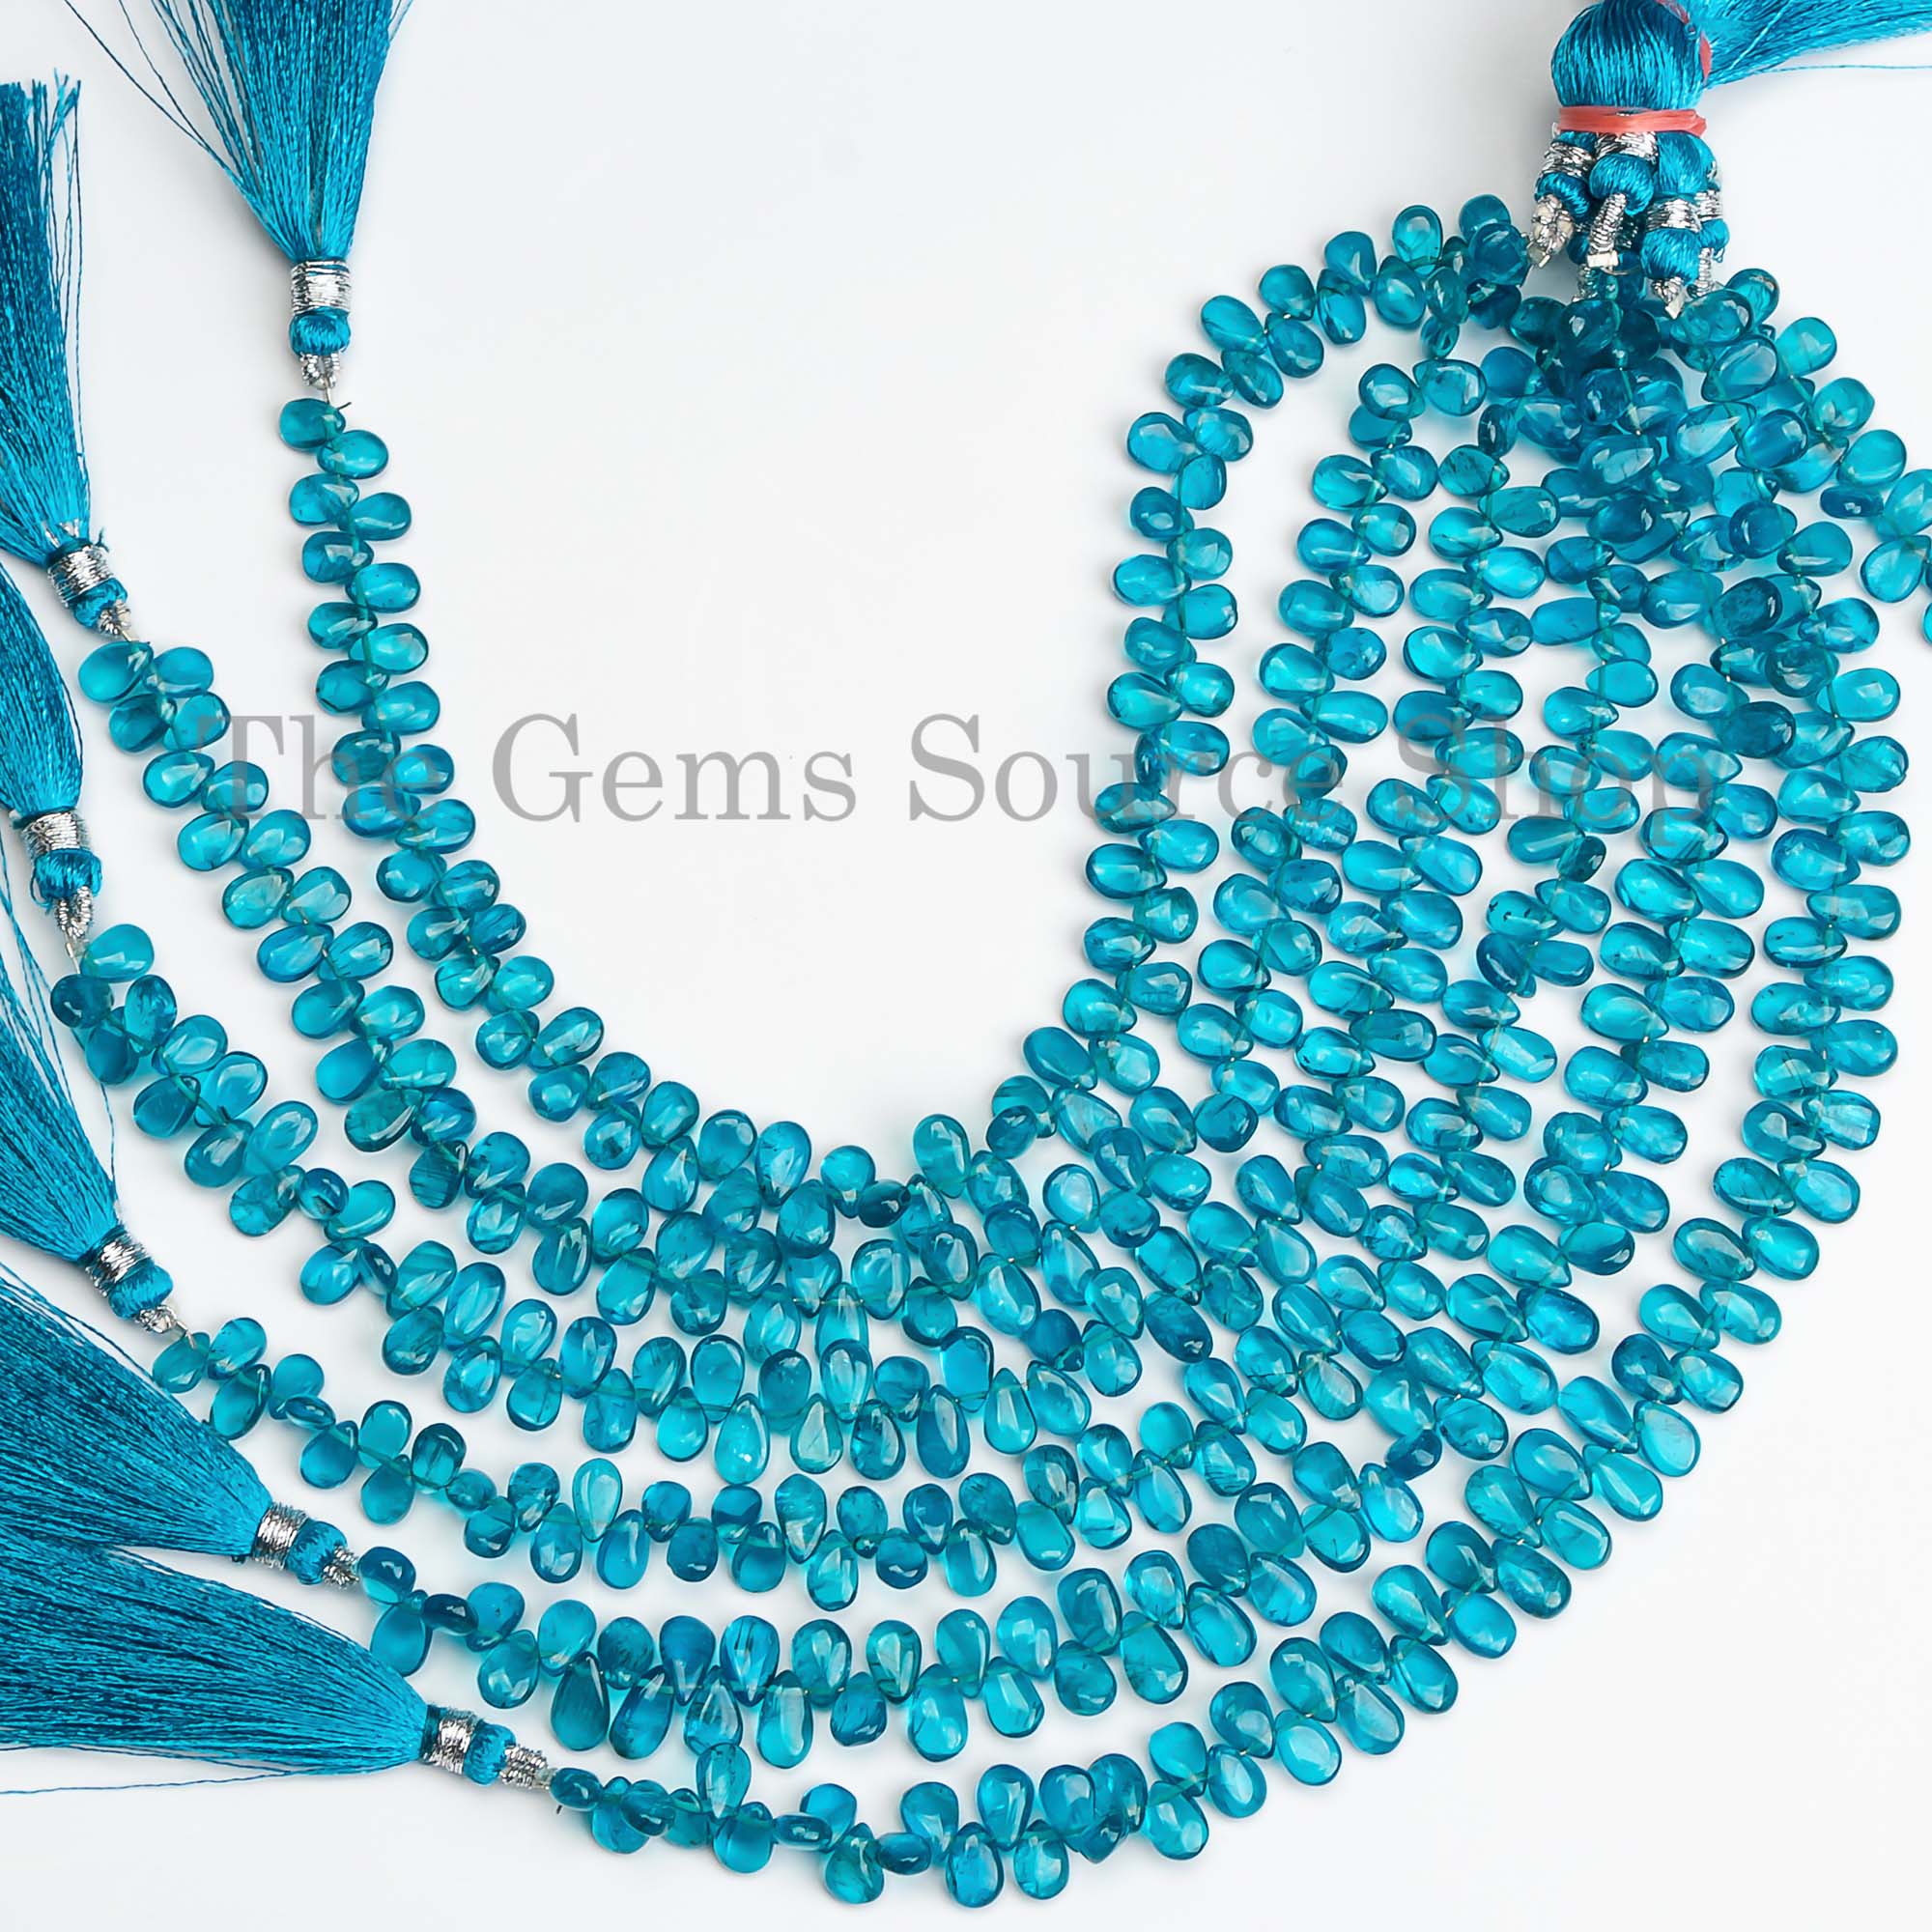 Neon Apatite Beads, Smooth Apatite Beads, Plain Pear Shape Beads, Apatite Gemstone Beads